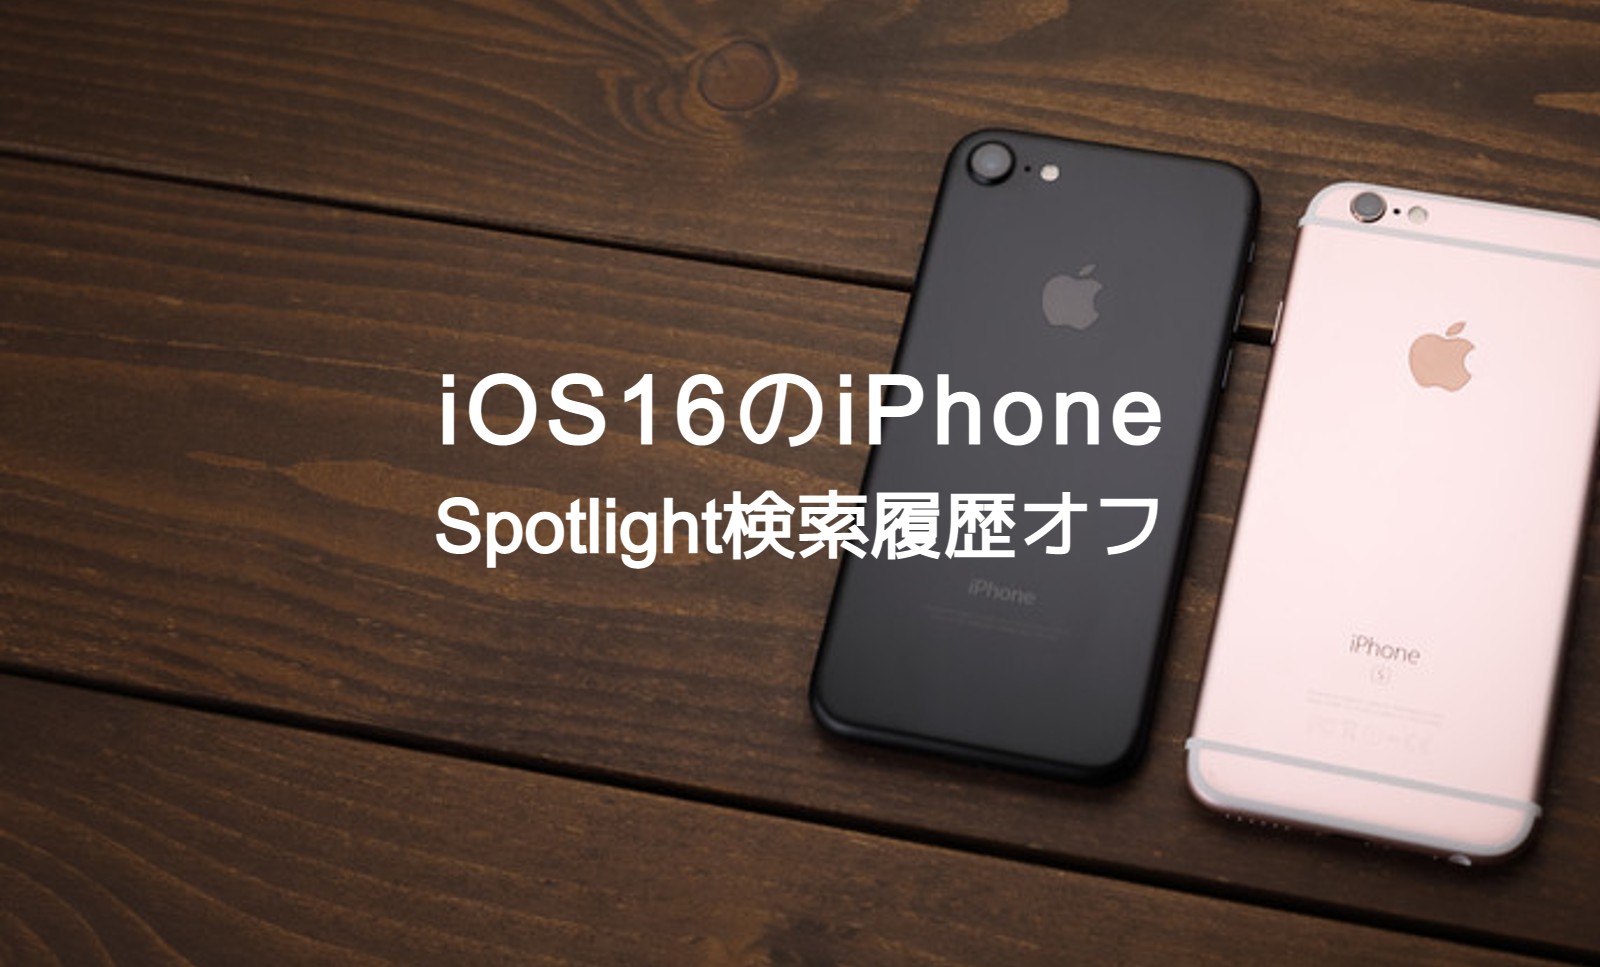 iOS17のiPhoneでSpotlight検索履歴をオフ&非表示にして削除する方法は？のサムネイル画像